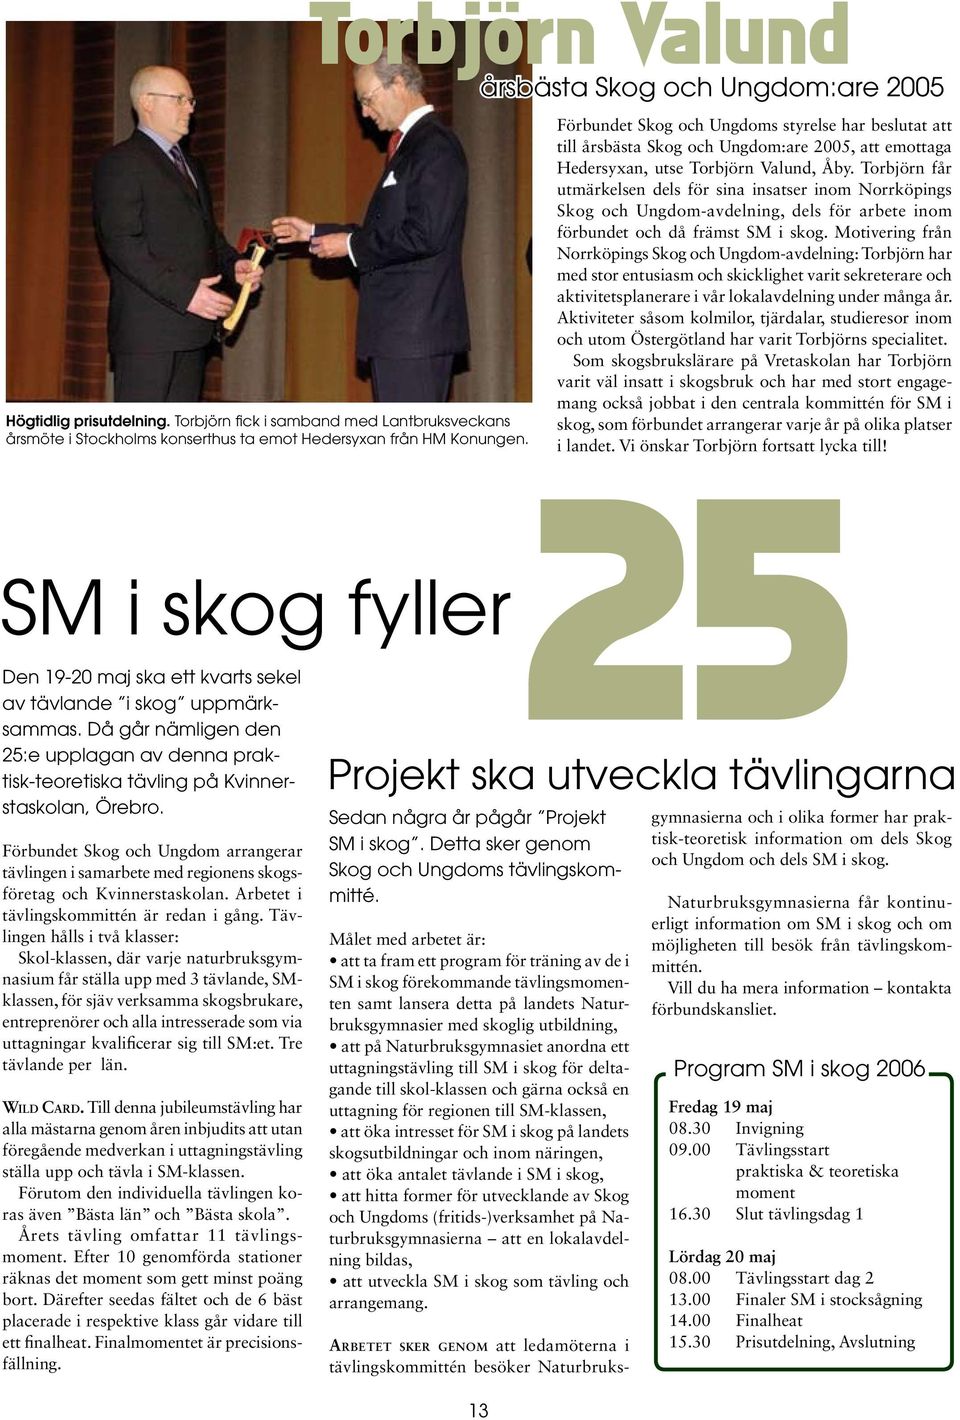 Torbjörn får utmärkelsen dels för sina insatser inom Norrköpings Skog och Ungdom-avdelning, dels för arbete inom förbundet och då främst SM i skog.